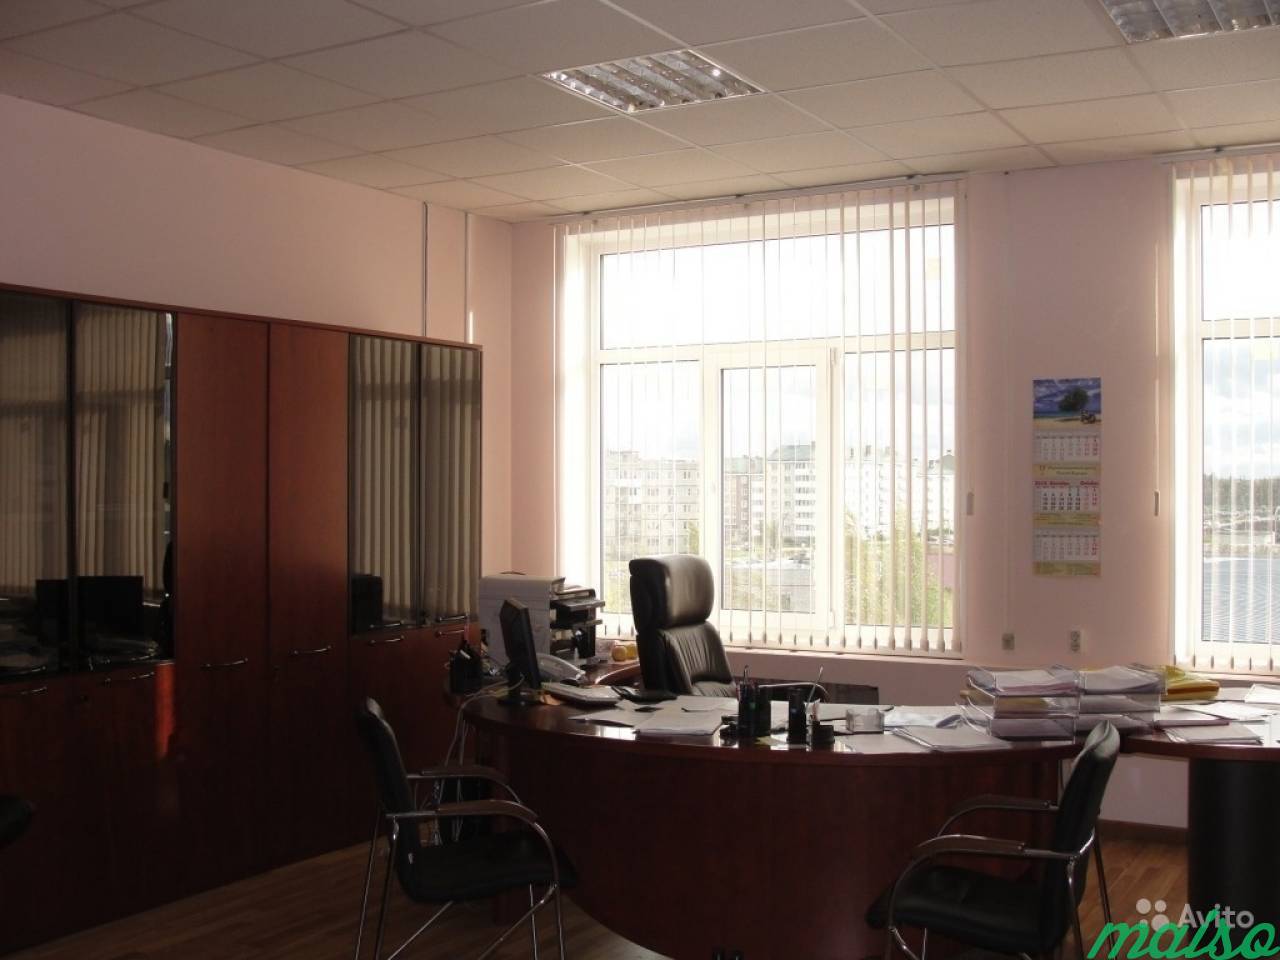 Офисное помещение в Славянке, от 12 м² до 500 м² в Санкт-Петербурге. Фото 6